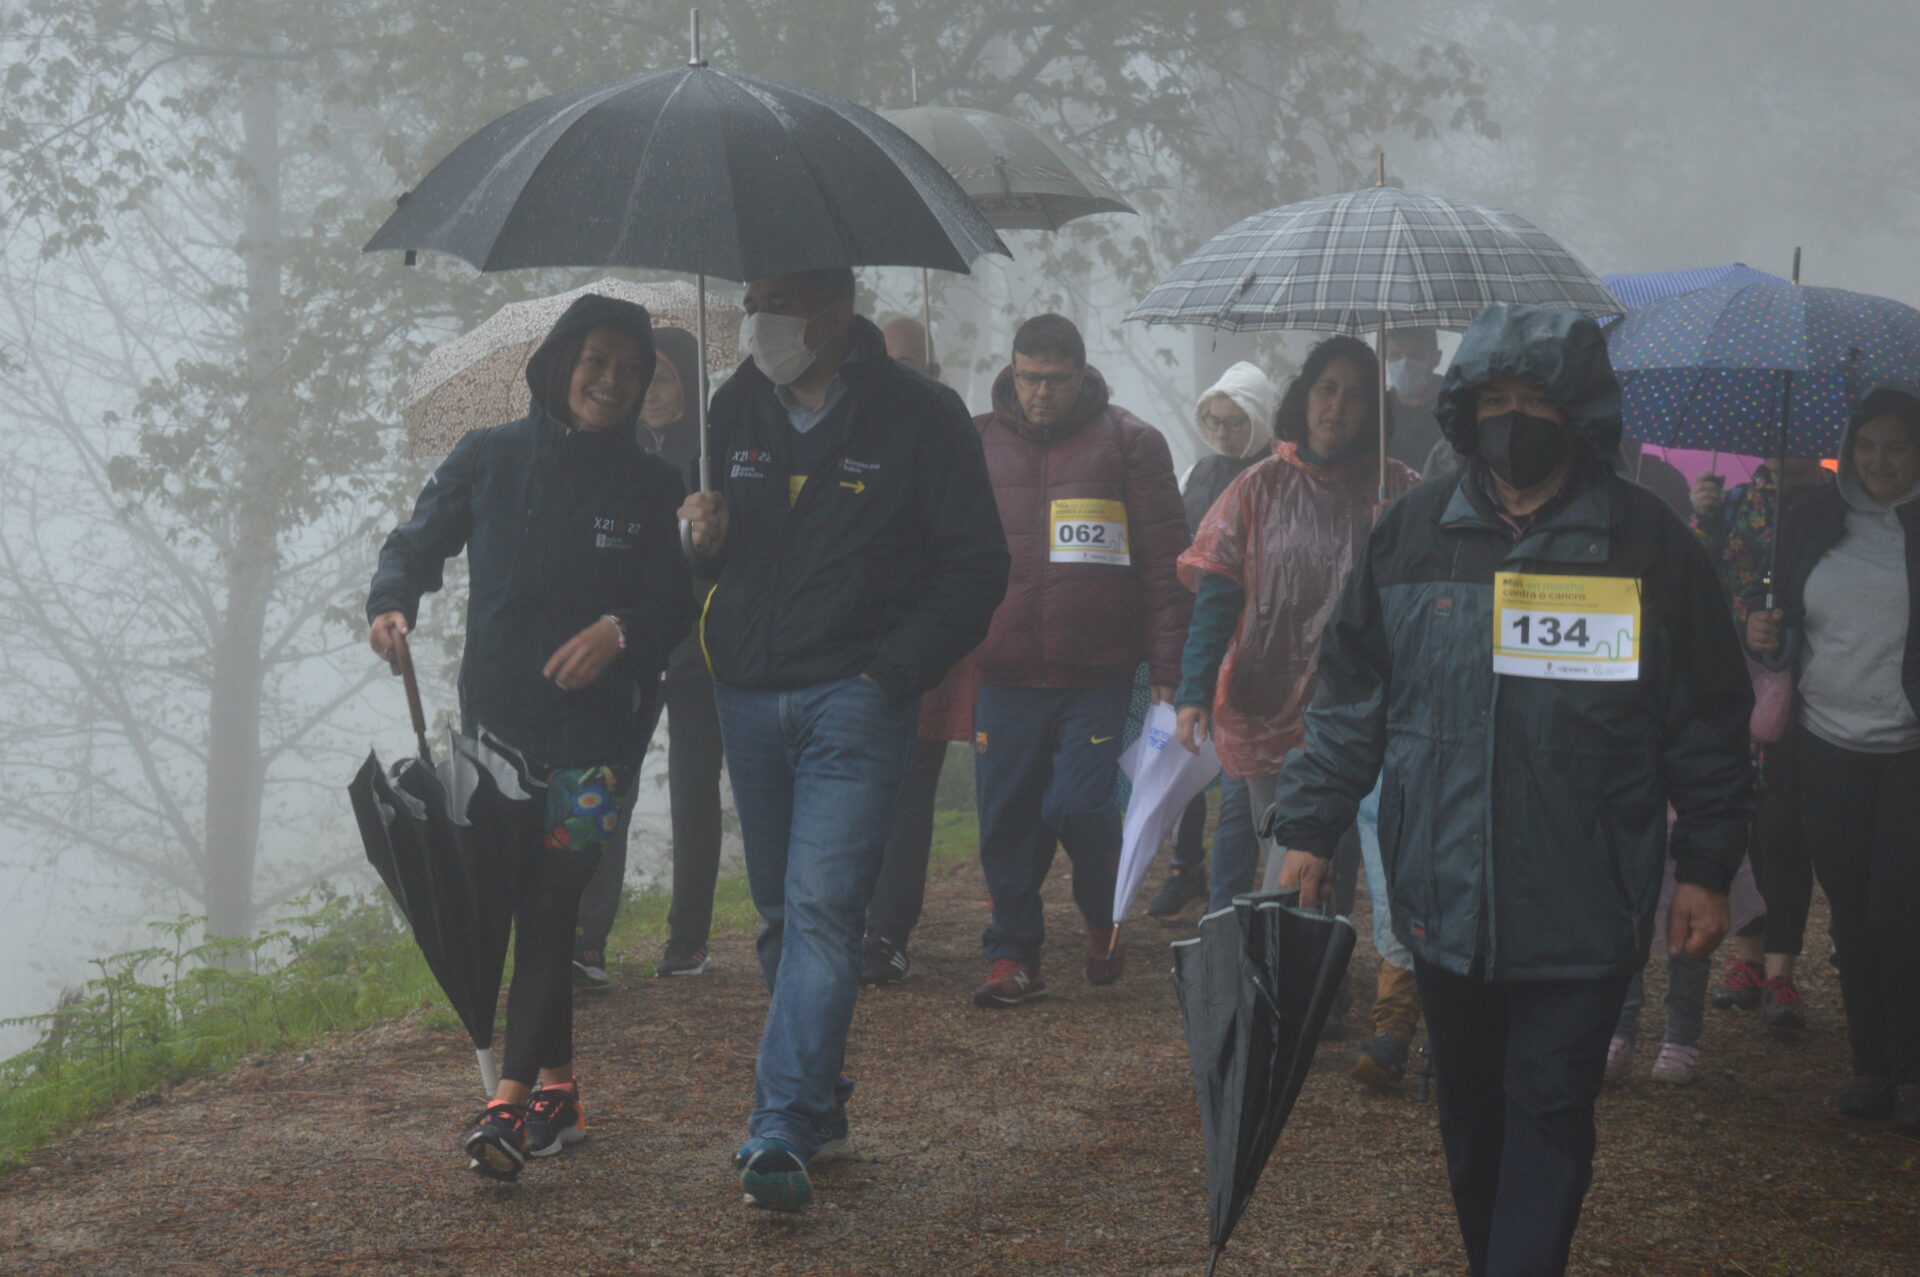 El mal tiempo no frena la solidaridad en Mos